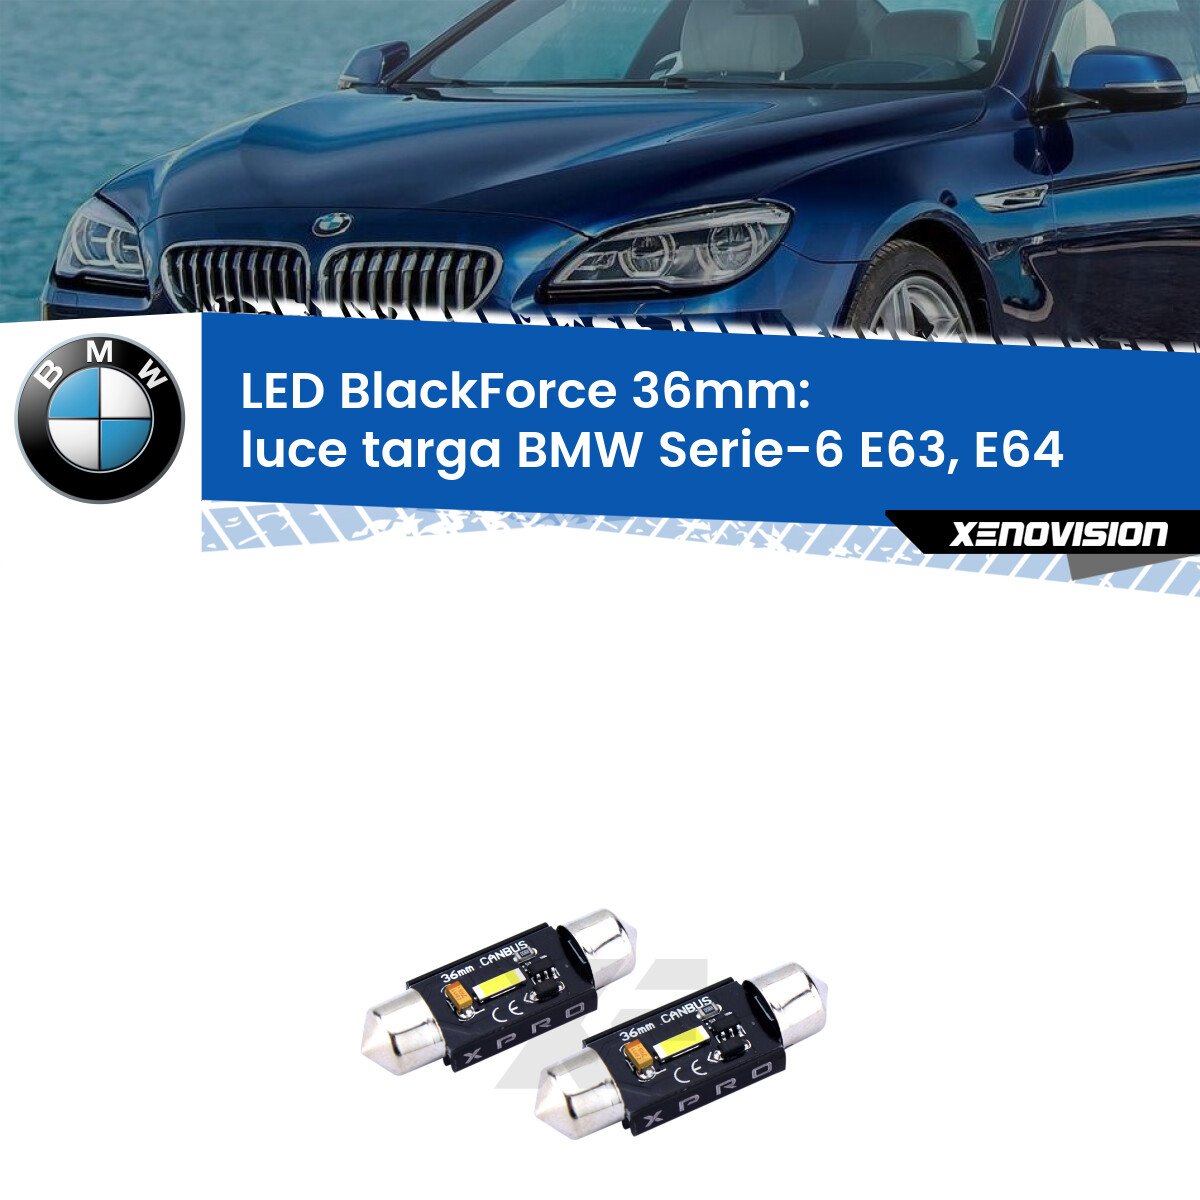 Luce Targa LED per BMW Serie-6 E63, E64 2004 - 2010: BlackForce C5W 36mm